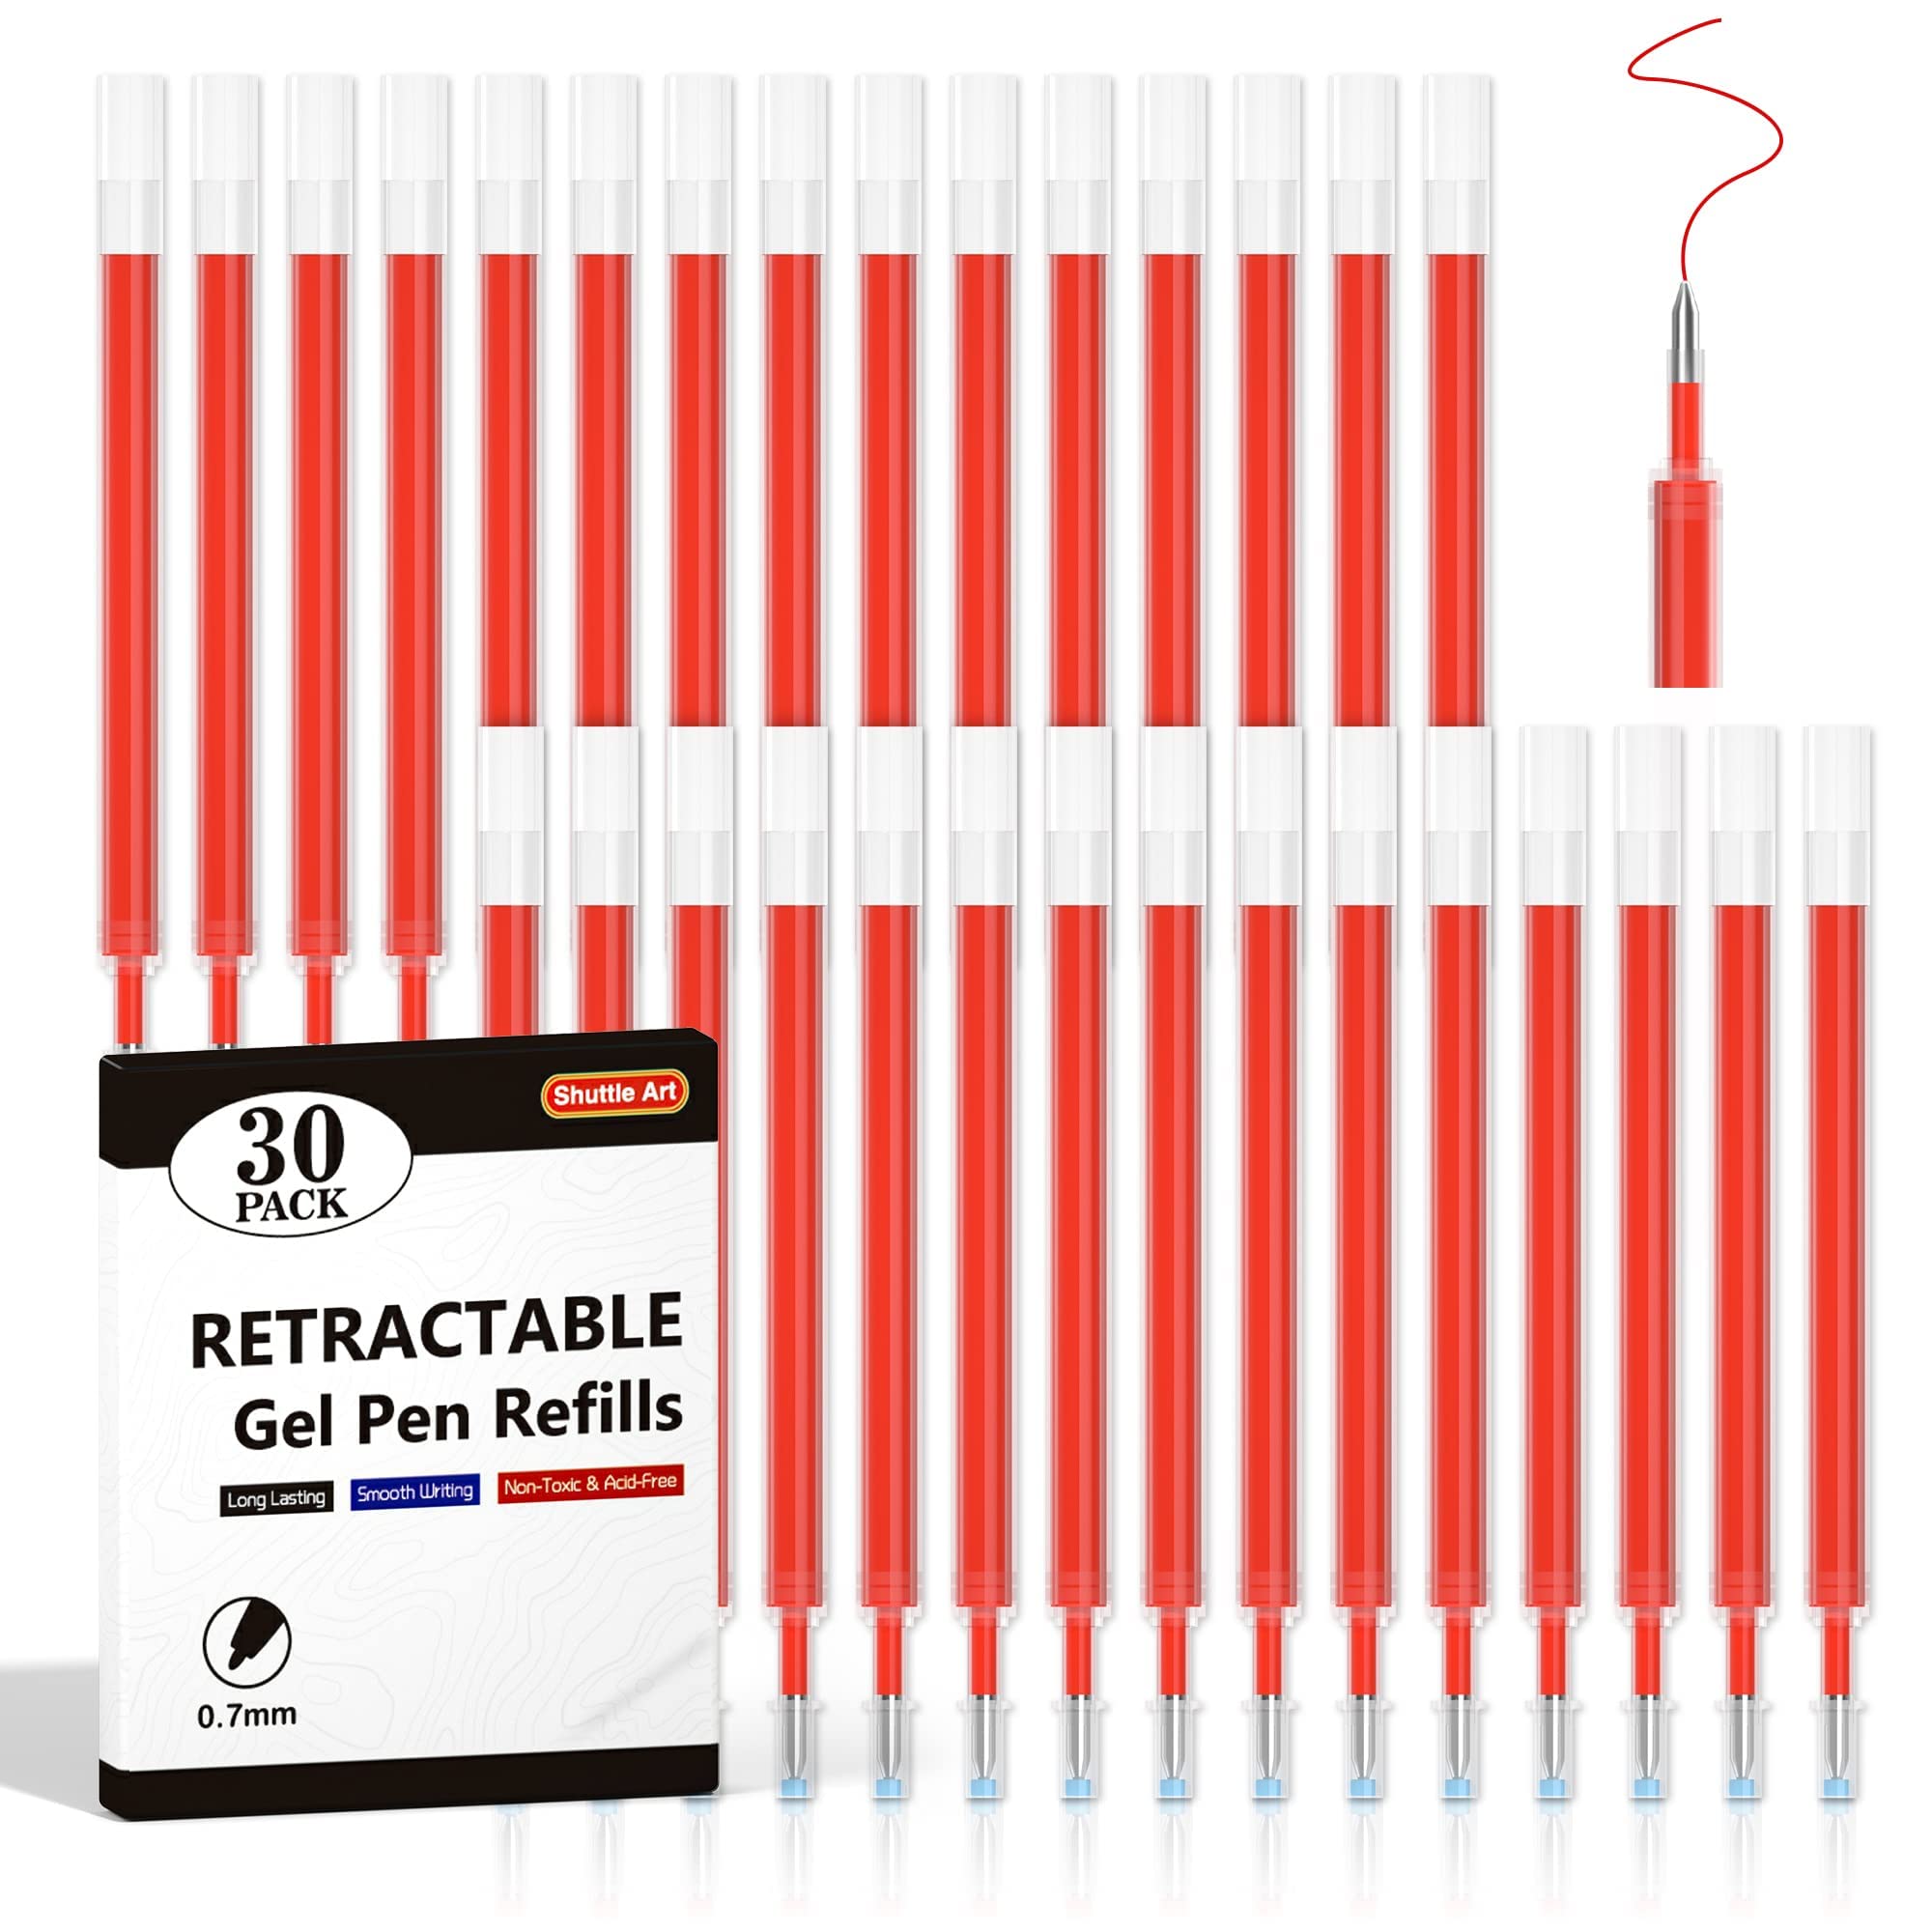 Shuttle Art Retractable Gel Pen Refills, 30 Pack Red Rollerball Gel Ink Pens Refills, Bulk Set, 07Mm Fine Point For Writing Jour